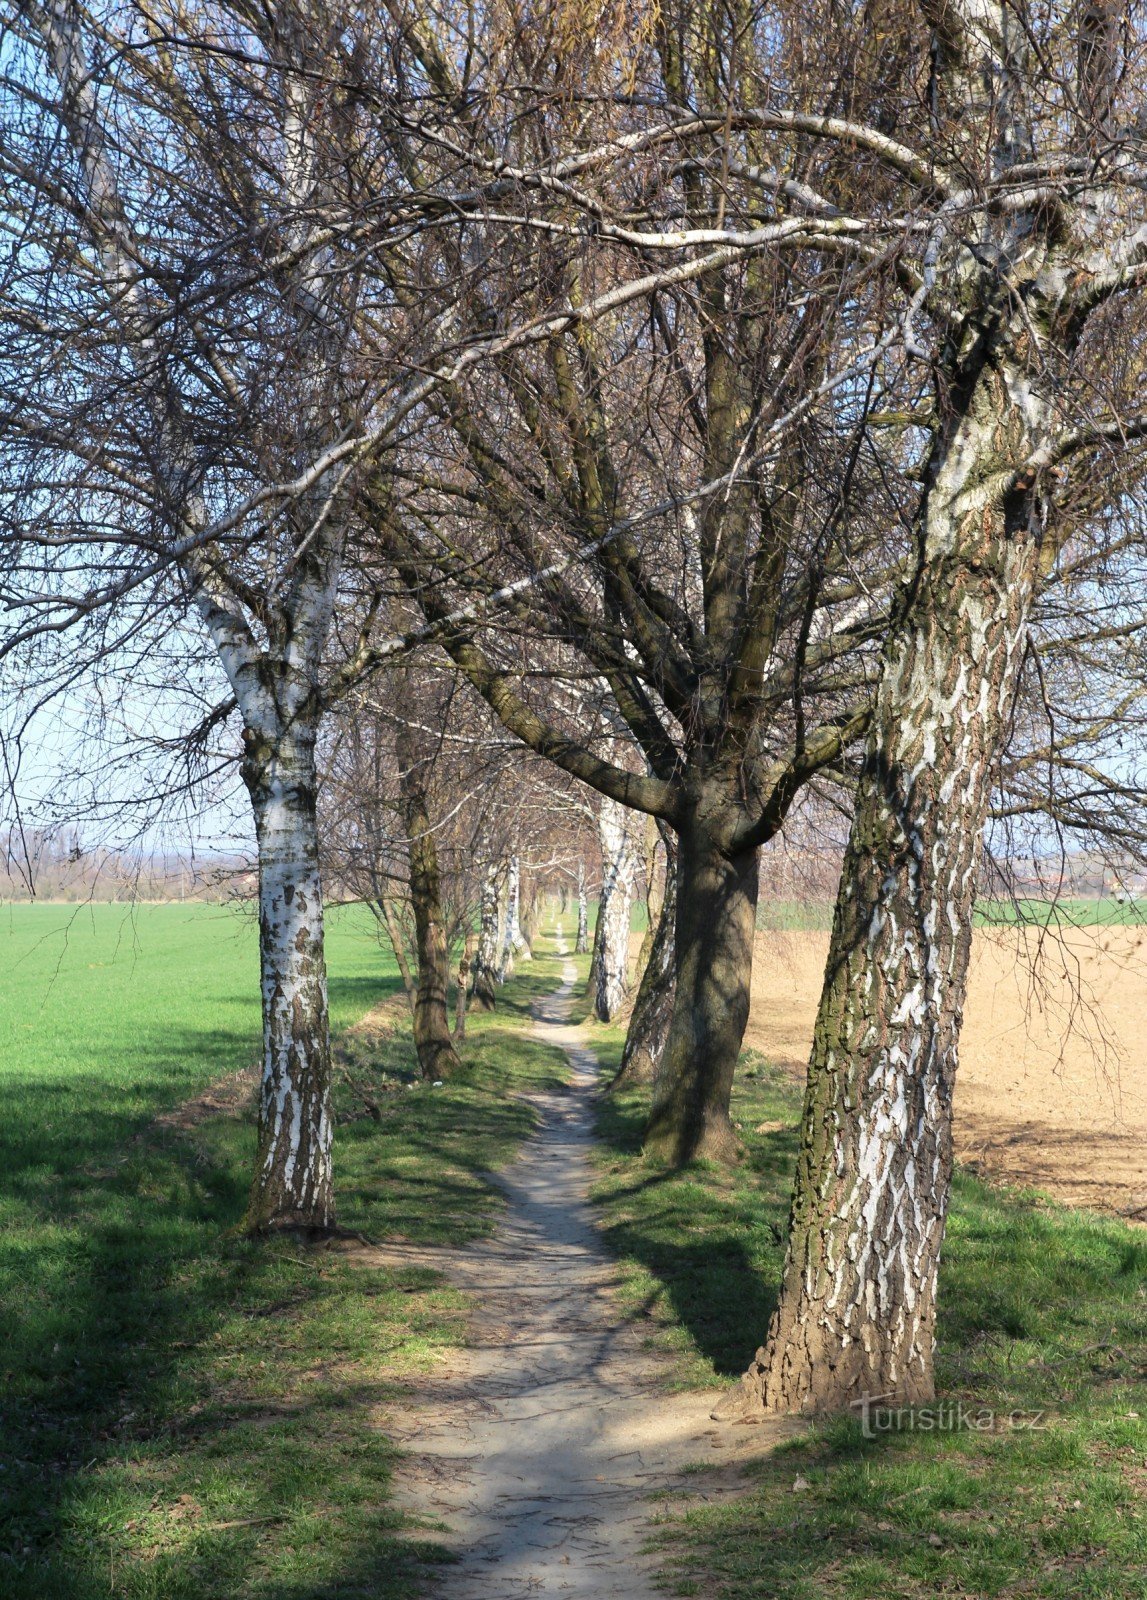 De huidige Holasická cesta heeft meer het karakter van een voetpad